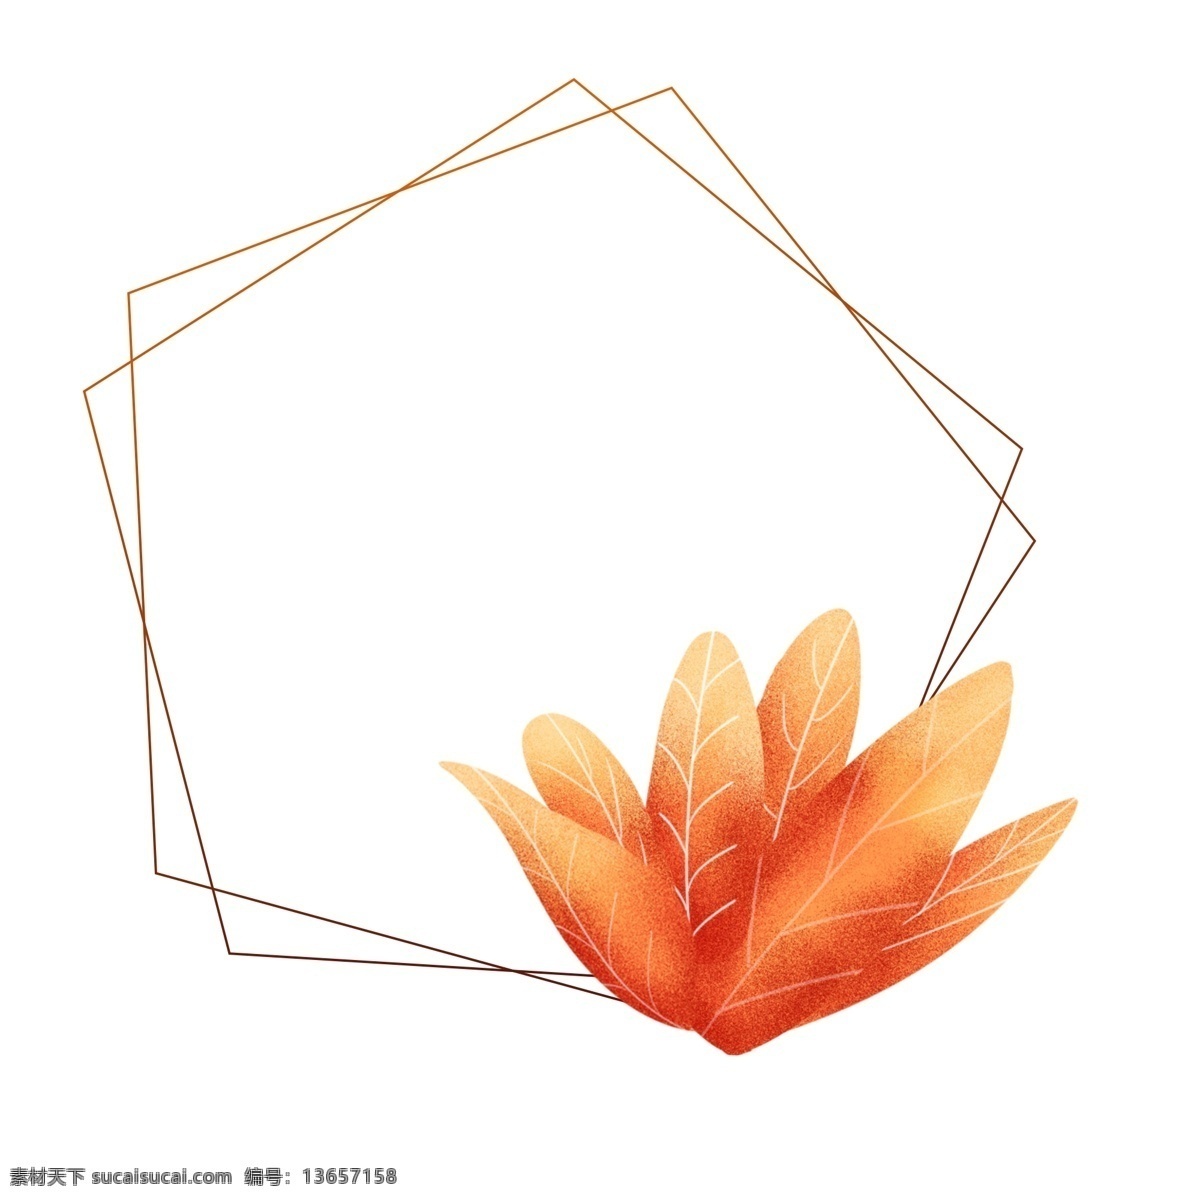 手绘 珊瑚 橘 配色 植物 叶子 边框 元素 手绘边框 手绘植物 手绘叶子 珊瑚橘边框 珊瑚橘植物 珊瑚橘叶子